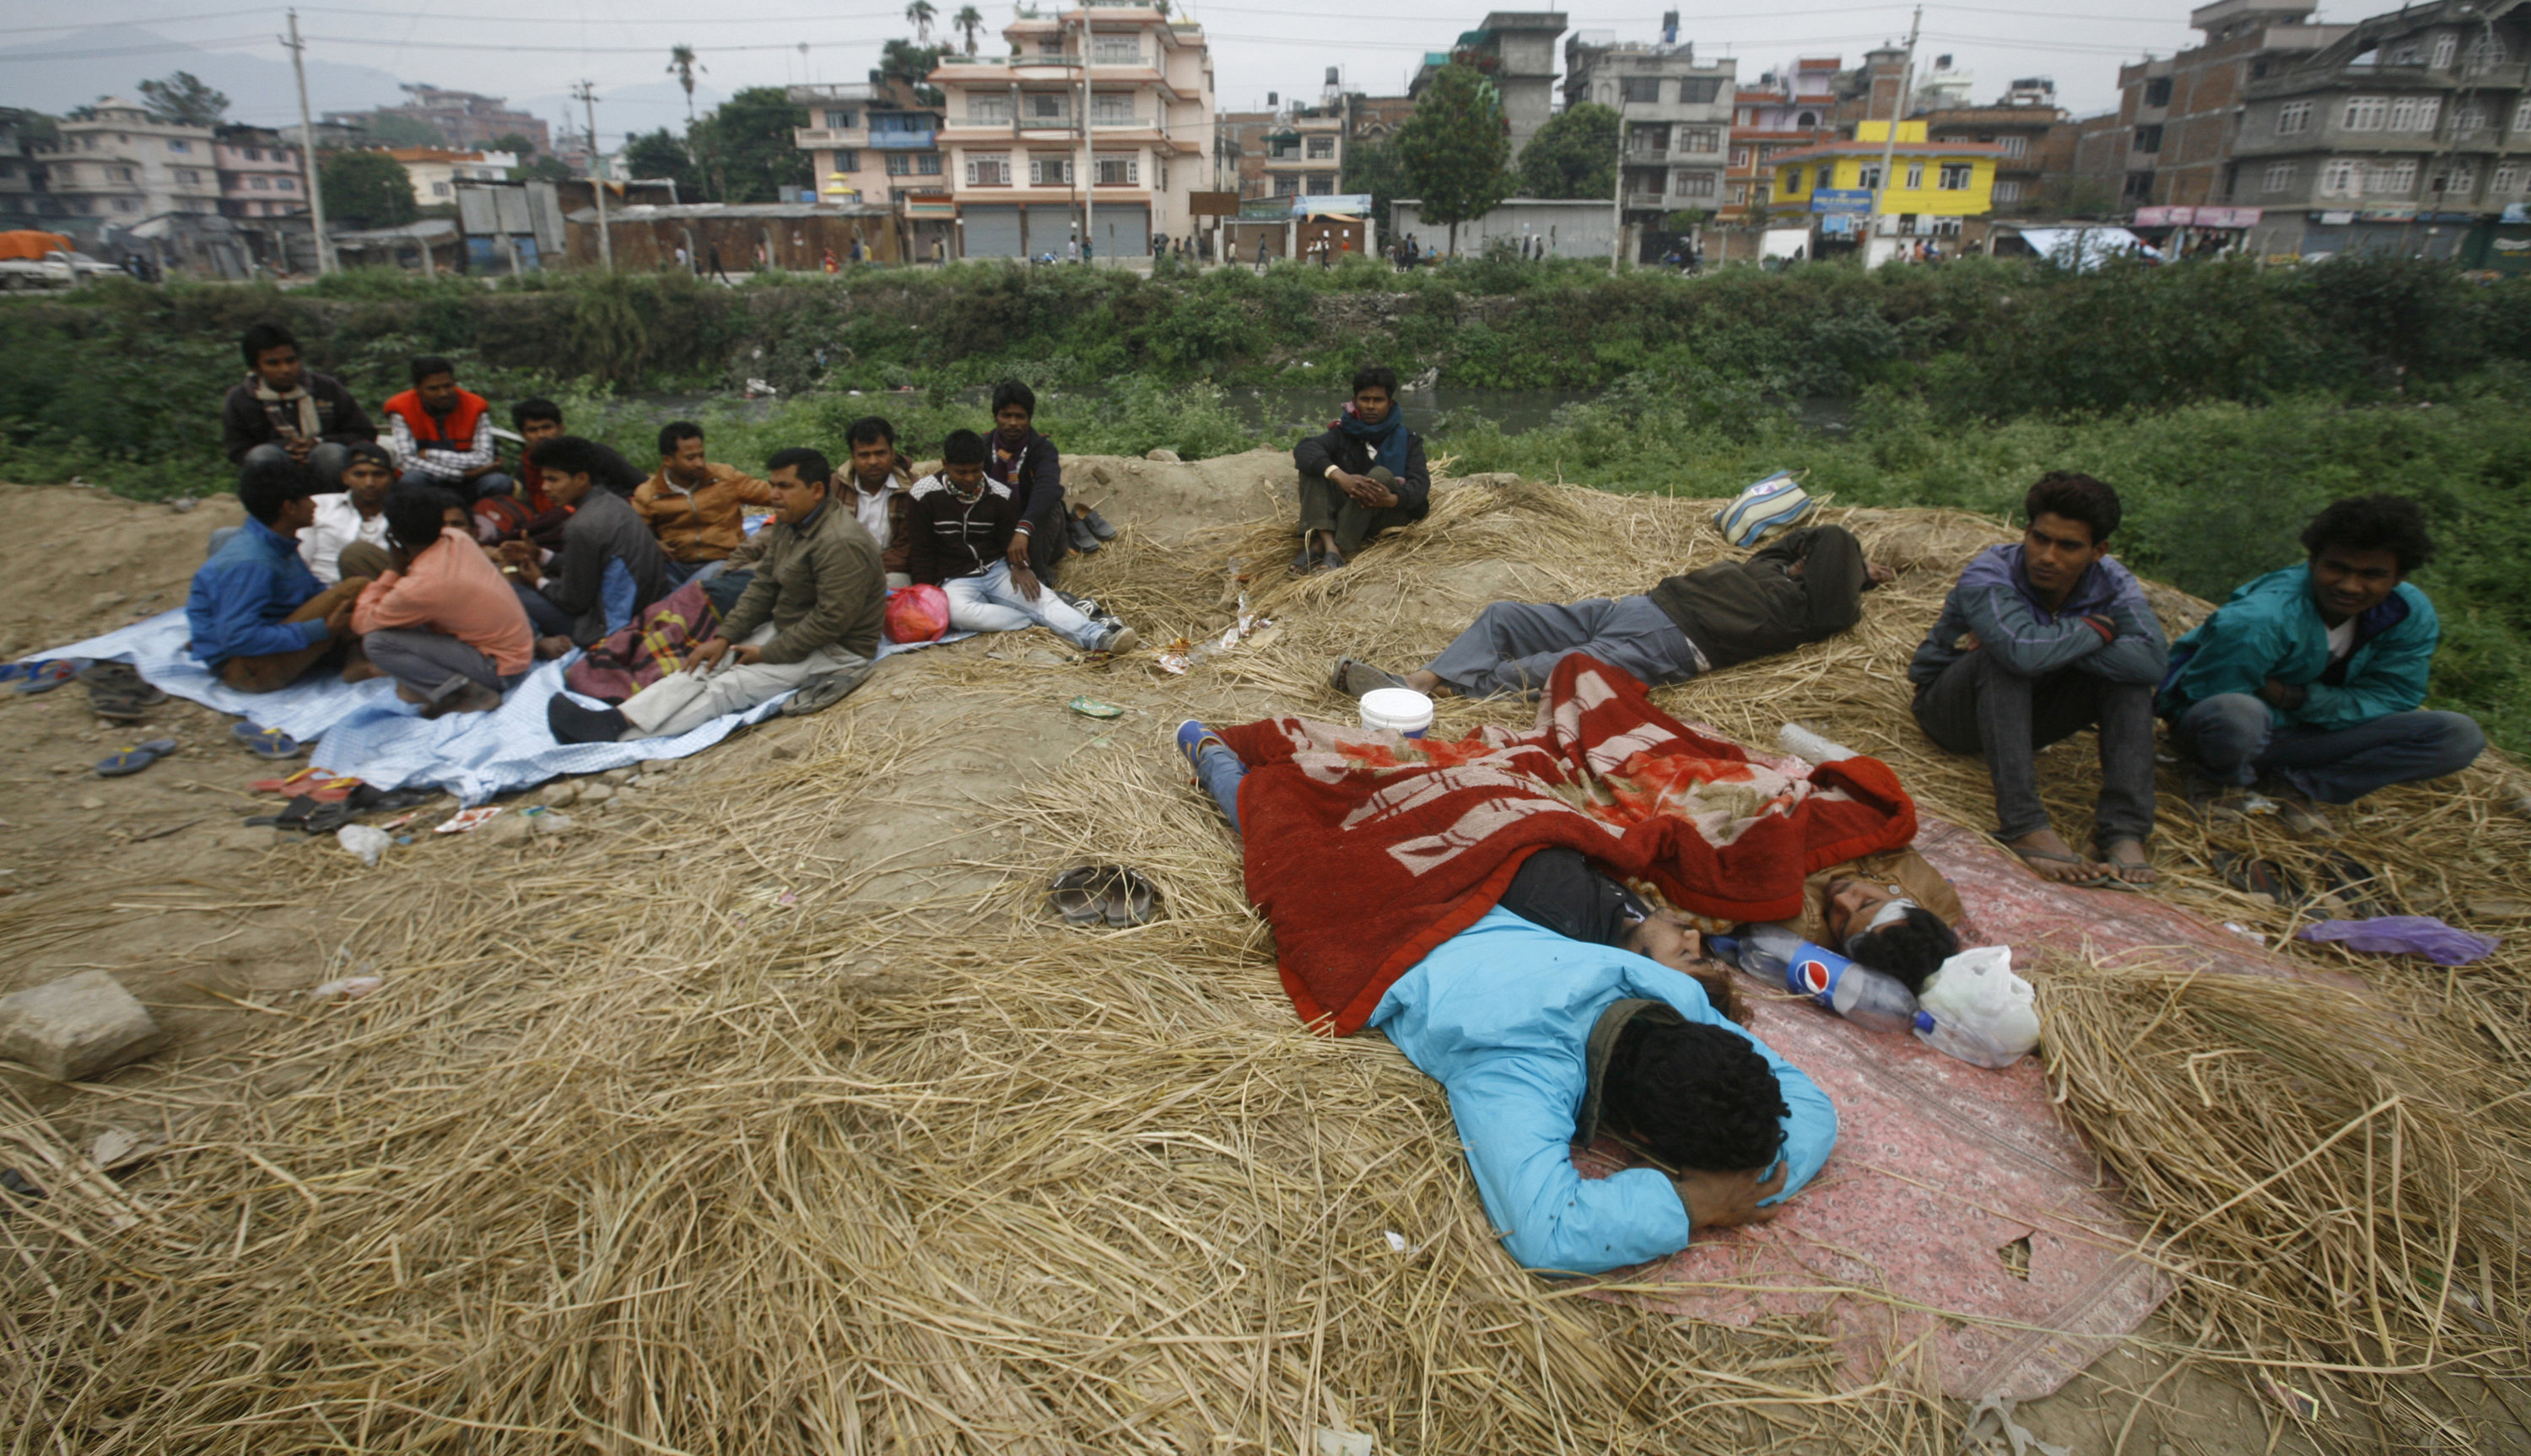 Folk vilar utomhus, dagen efter den massiva jordbävningen som ödelade regionen och förstörde mångas hem i Kathmandu.
